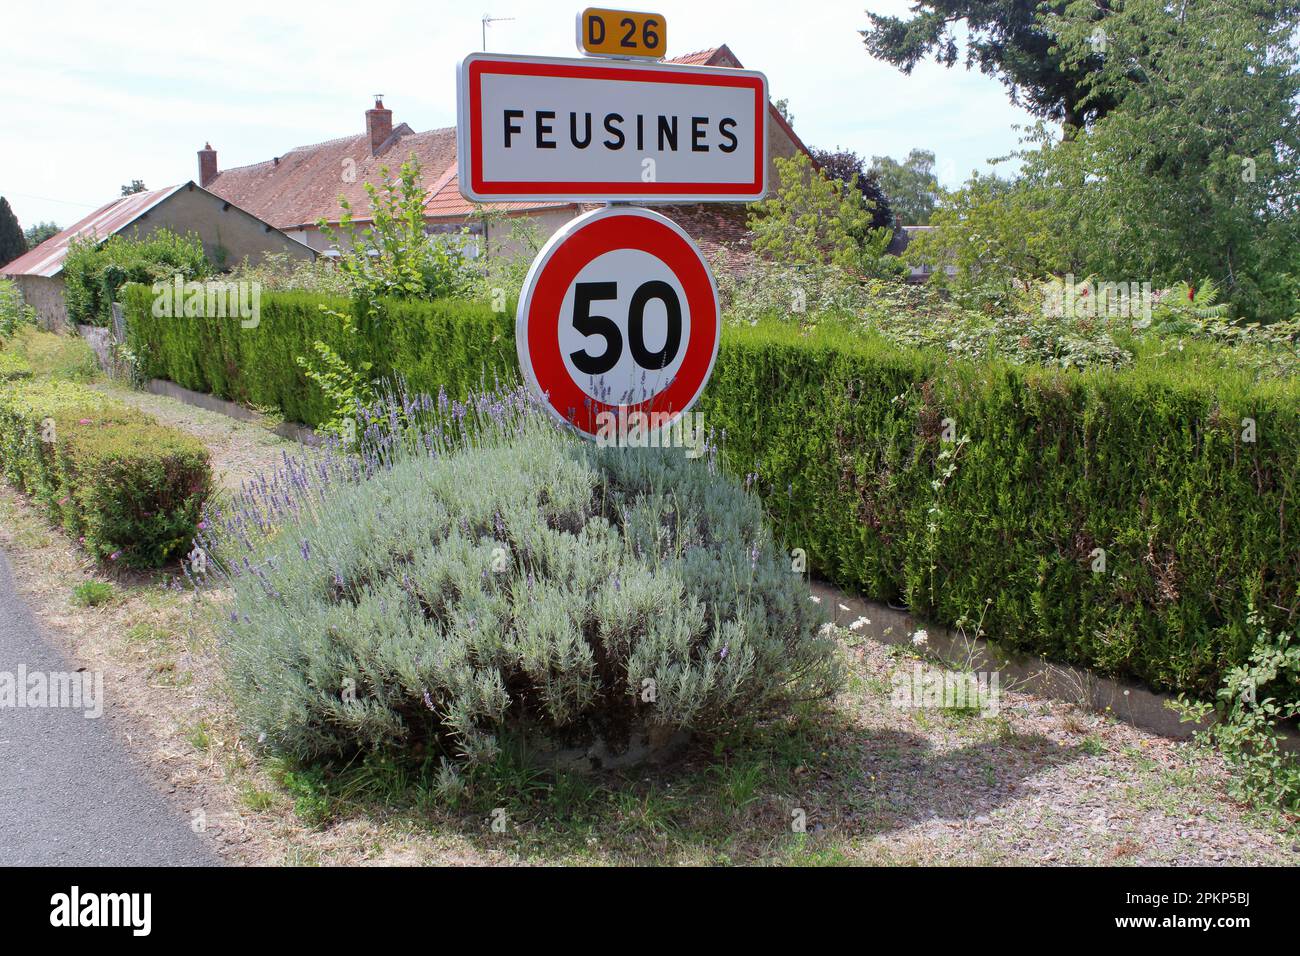 Signe représentant l'arrivée dans le village de Feusines une commune rurale située dans la région Indre du centre de la France. Banque D'Images